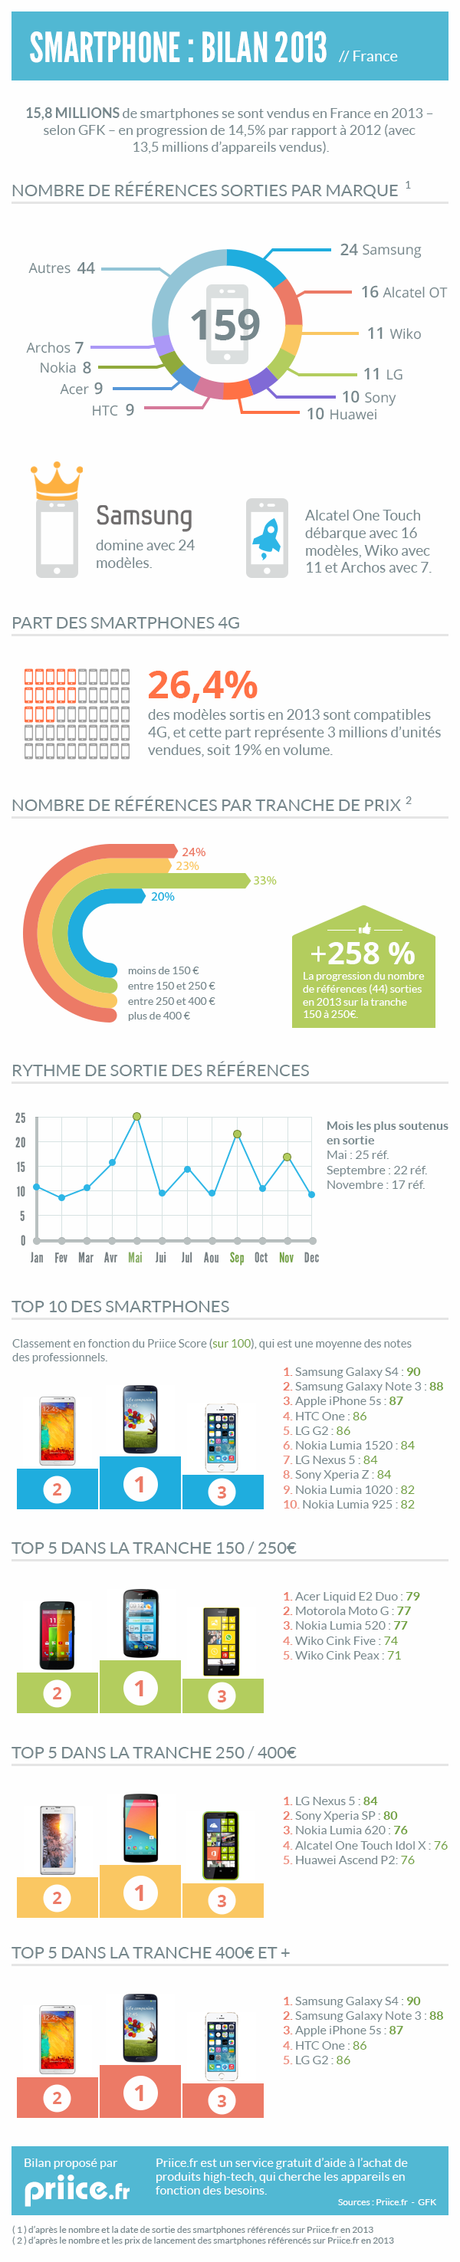 Infographie bilan des smartphones en France en 2013